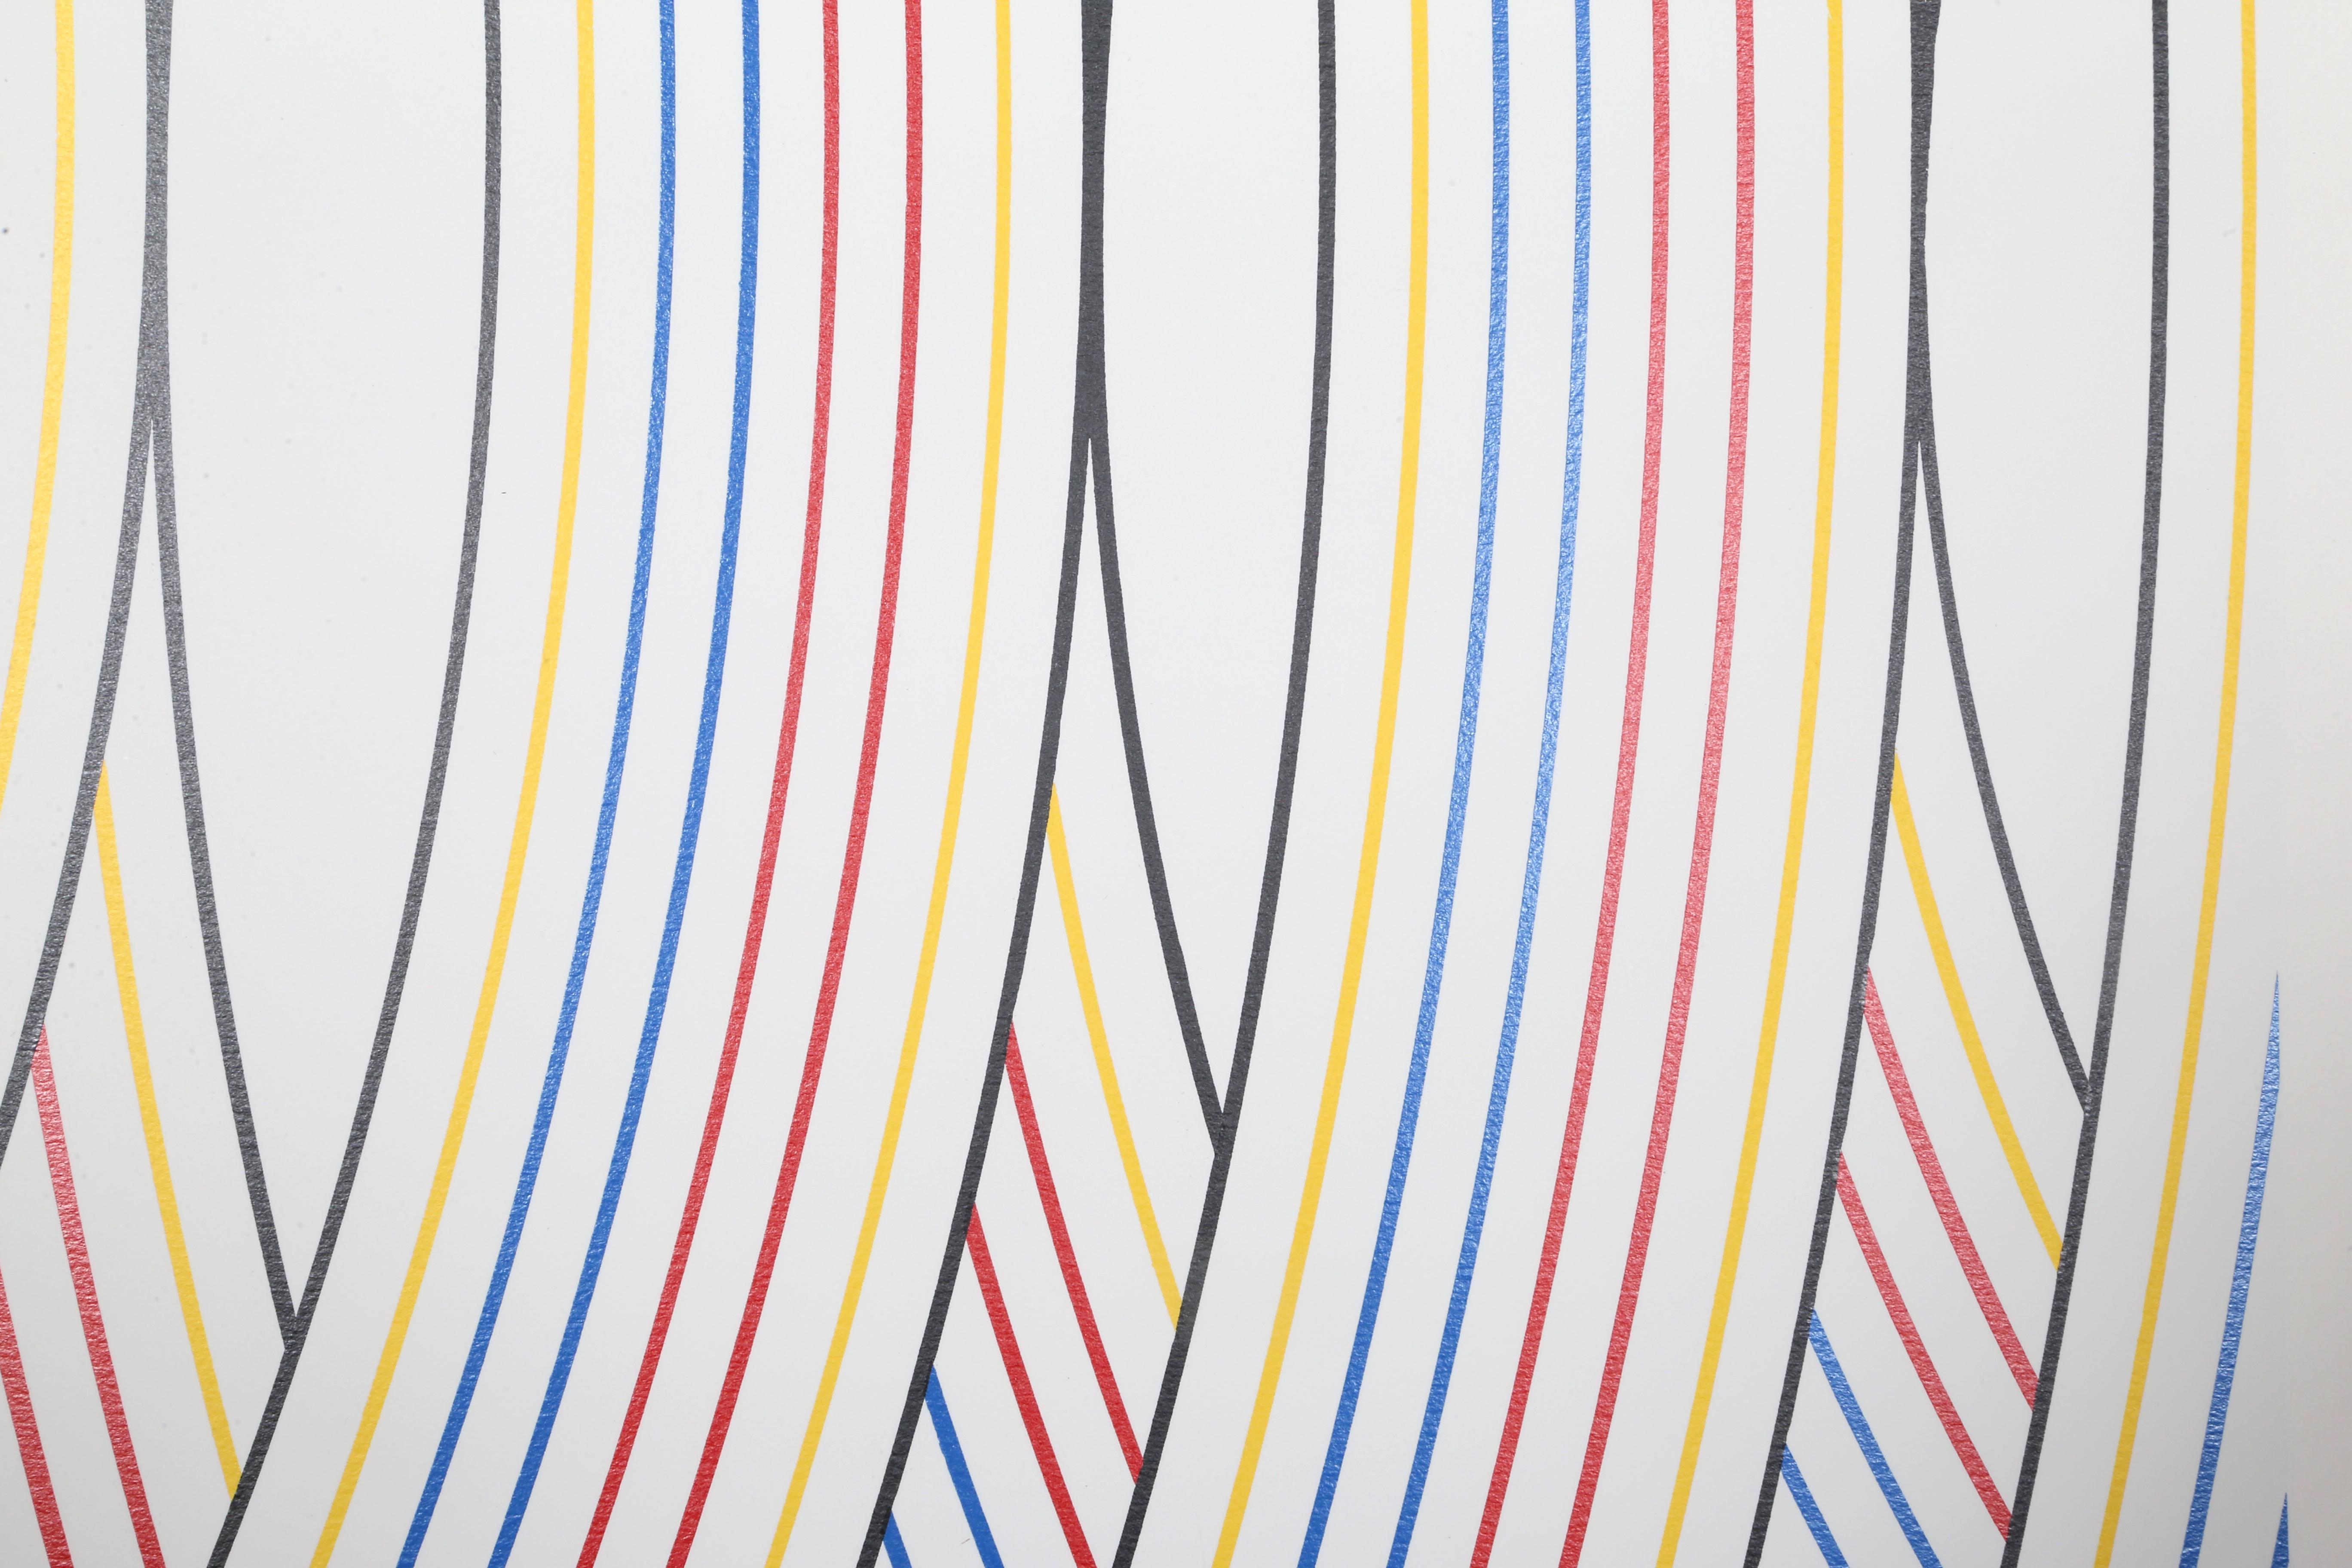 Künstler:  Nassos Daphnis, Grieche (1914 - 2010)
Titel:  SS 1-82
Jahr:  1982
Medium:  Siebdruck, signiert und nummeriert mit Bleistift
Auflage:  22/120
Größe:  35.75  x 30 in. (90.81  x 76,2 cm)